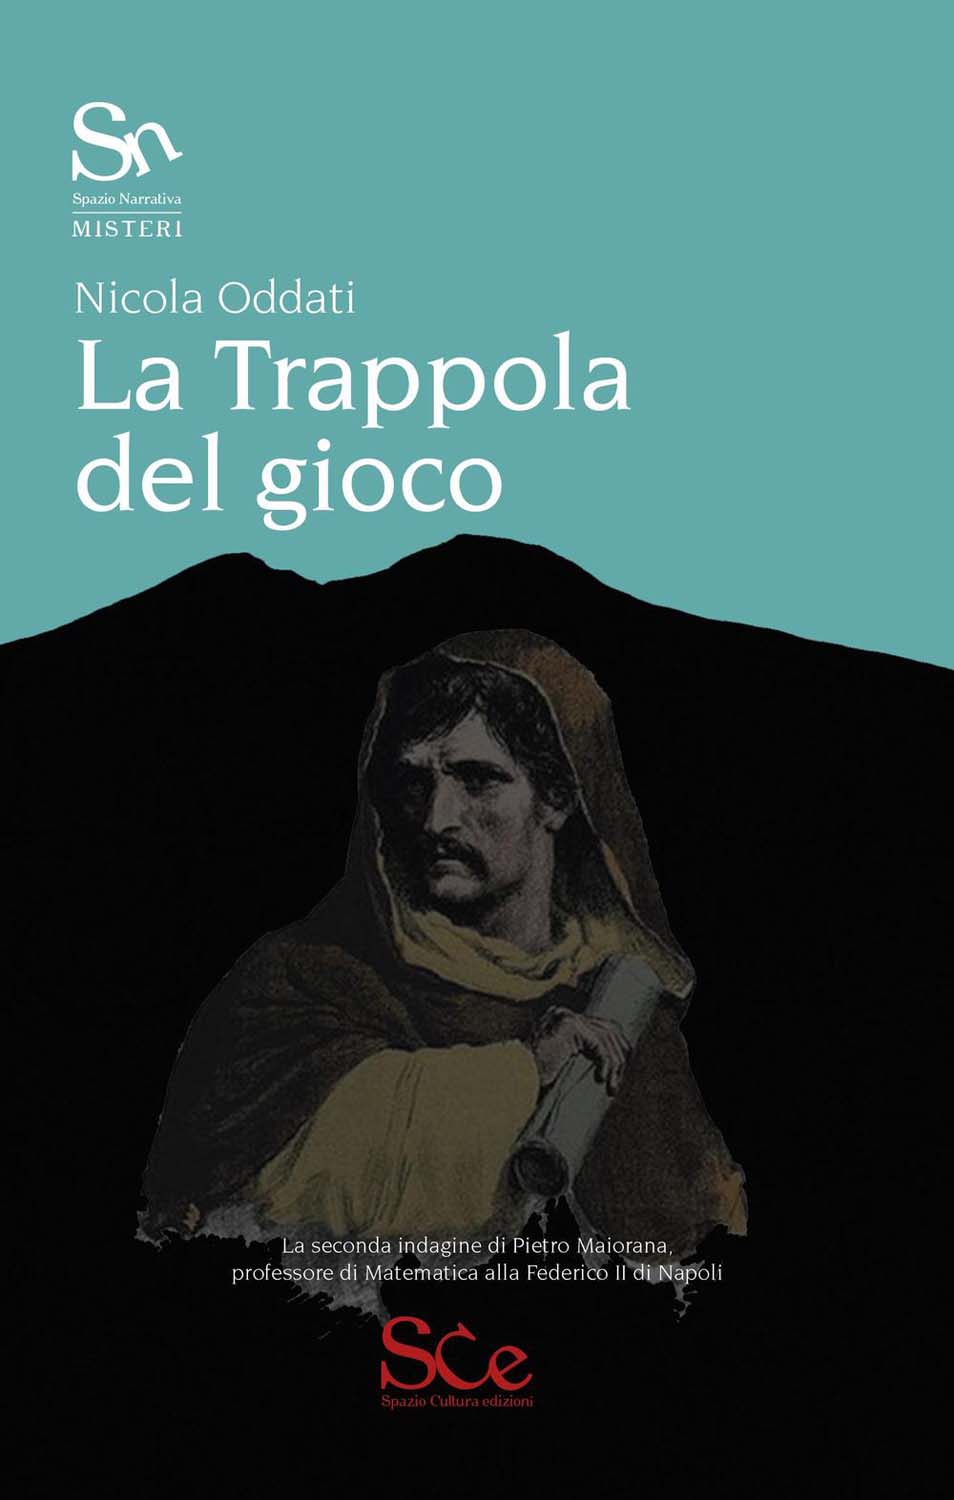 Libri Nicola Oddati - La Trappola Del Gioco NUOVO SIGILLATO, EDIZIONE DEL 30/09/2016 SUBITO DISPONIBILE